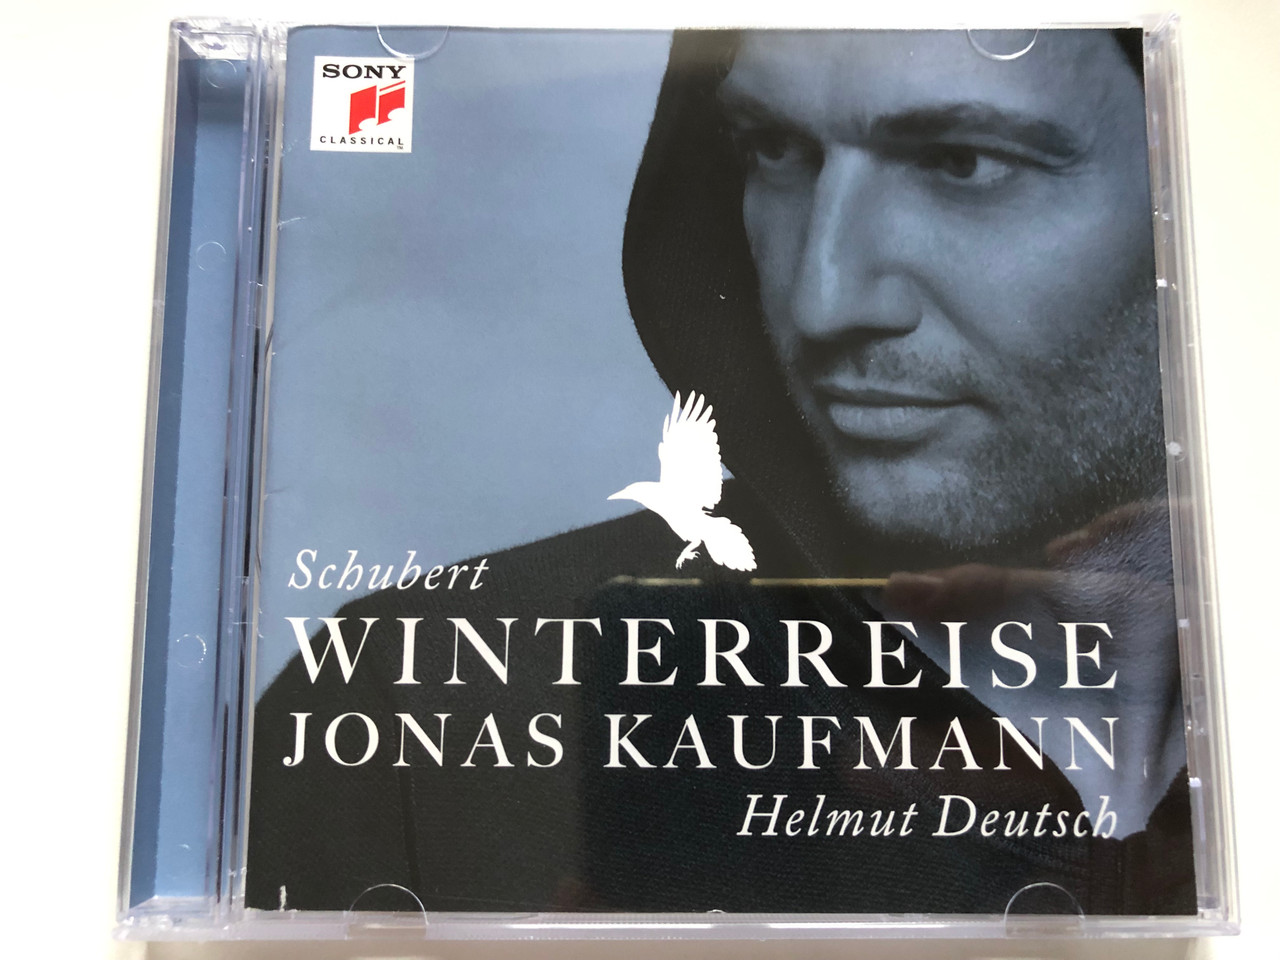 Schubert - Winterreise + Jonas Kaufmann, Helmut Deutsch / Sony Classical  Audio CD 2014 / 88883795652 - bibleinmylanguage